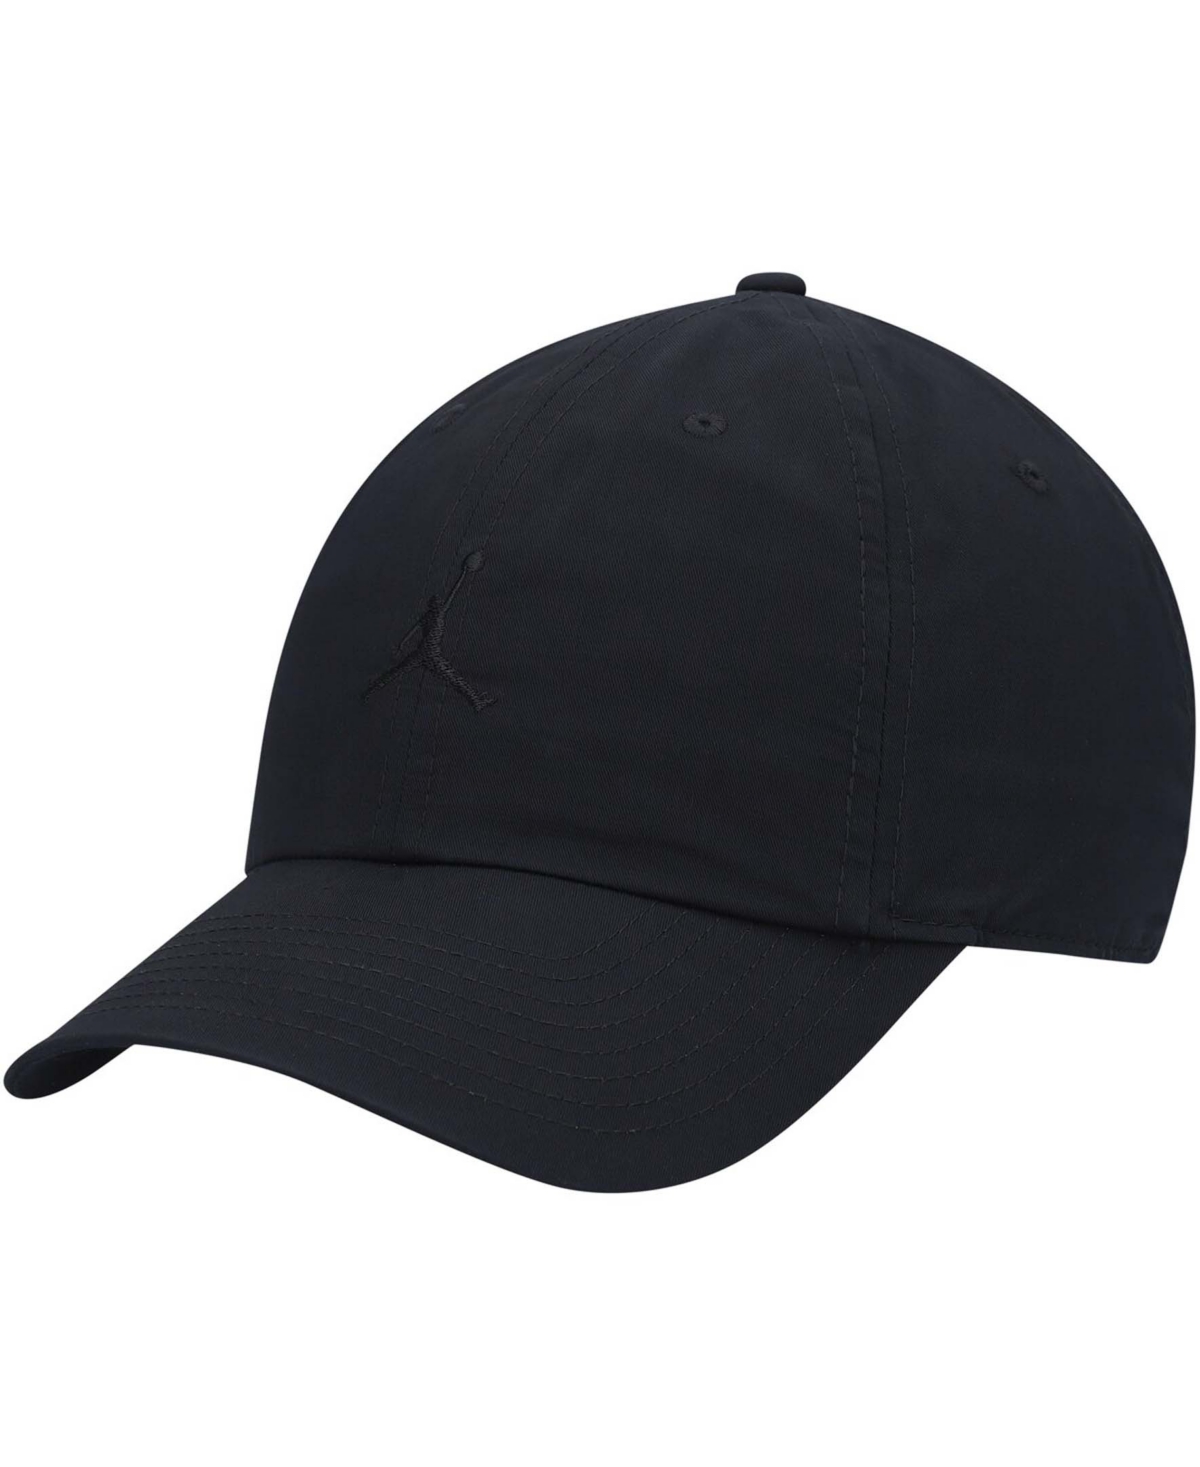 Men's Jordan Heritage86 Washed Adjustable Hat - Black